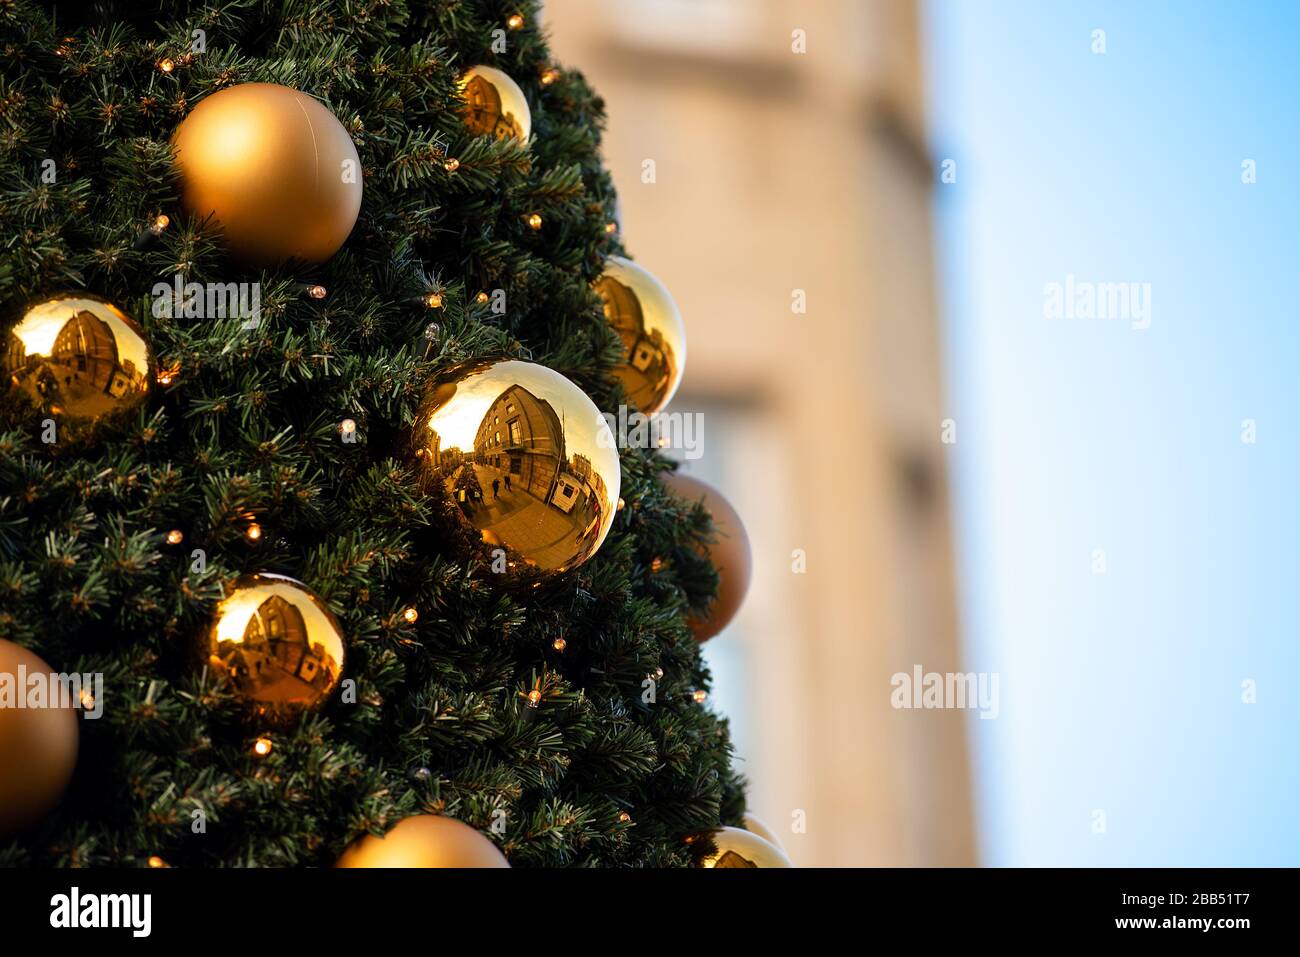 Las bolas doradas decorativas colgadas en un árbol de Navidad reflejan los edificios exteriores circundantes. Foto de stock